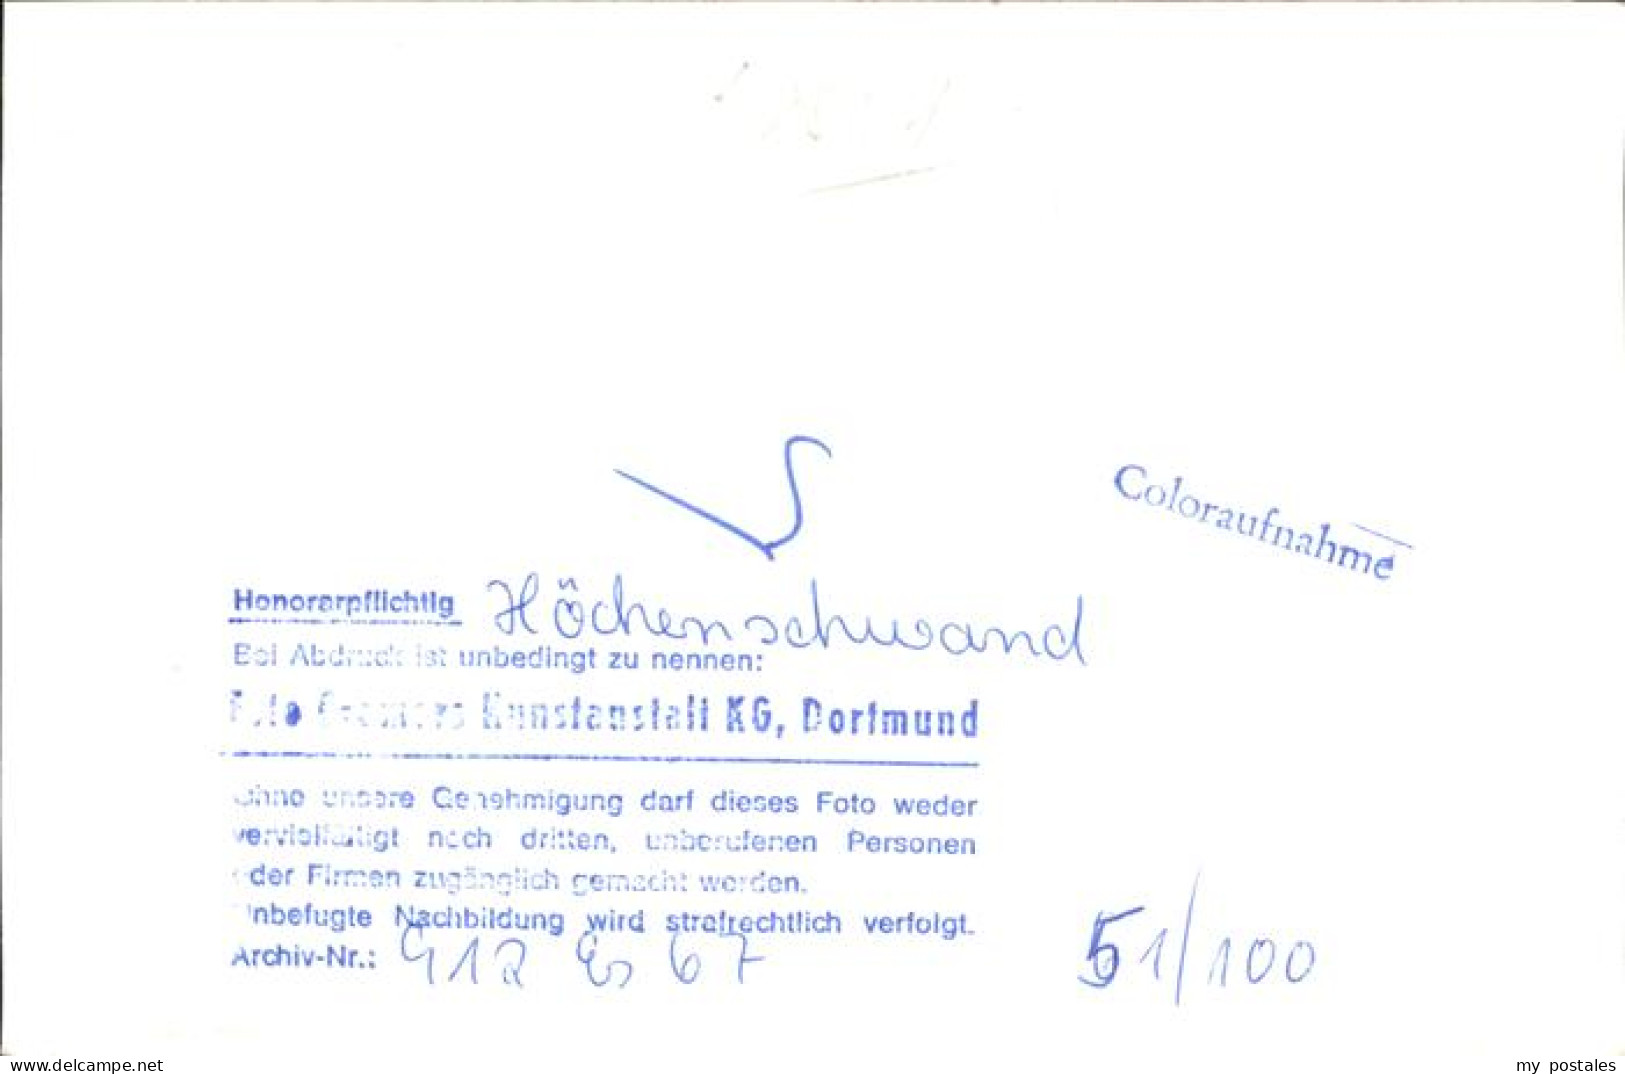 41343440 Hoechenschwand Sanatorium St.-Georg Hoechenschwand - Hoechenschwand